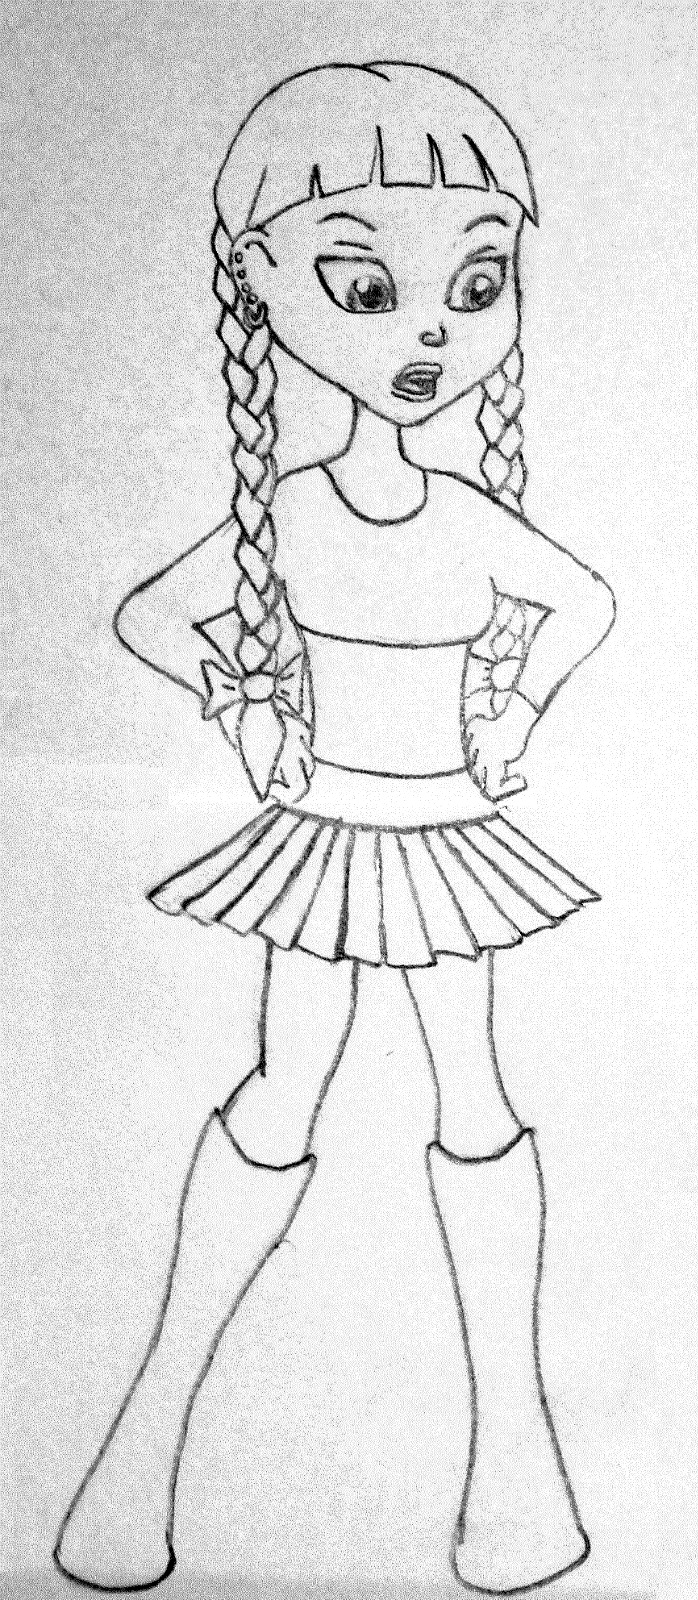 Girl with skirt